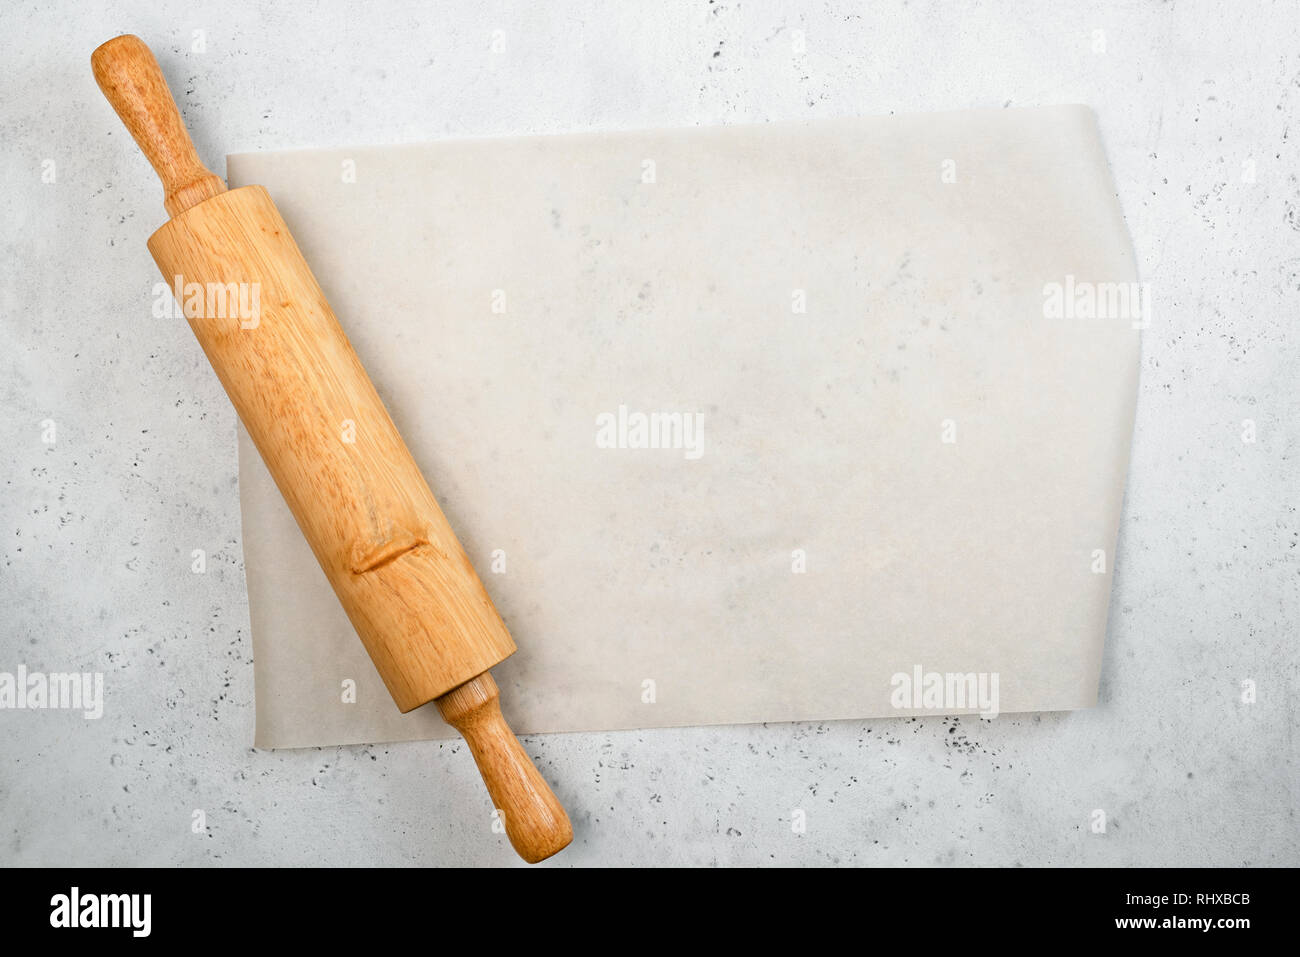 Rouleau à pâte et papier cuisson avec arrière-plan de l'espace pour copier du texte, recette, menu. La cuisson ou la cuisson des aliments contexte Banque D'Images